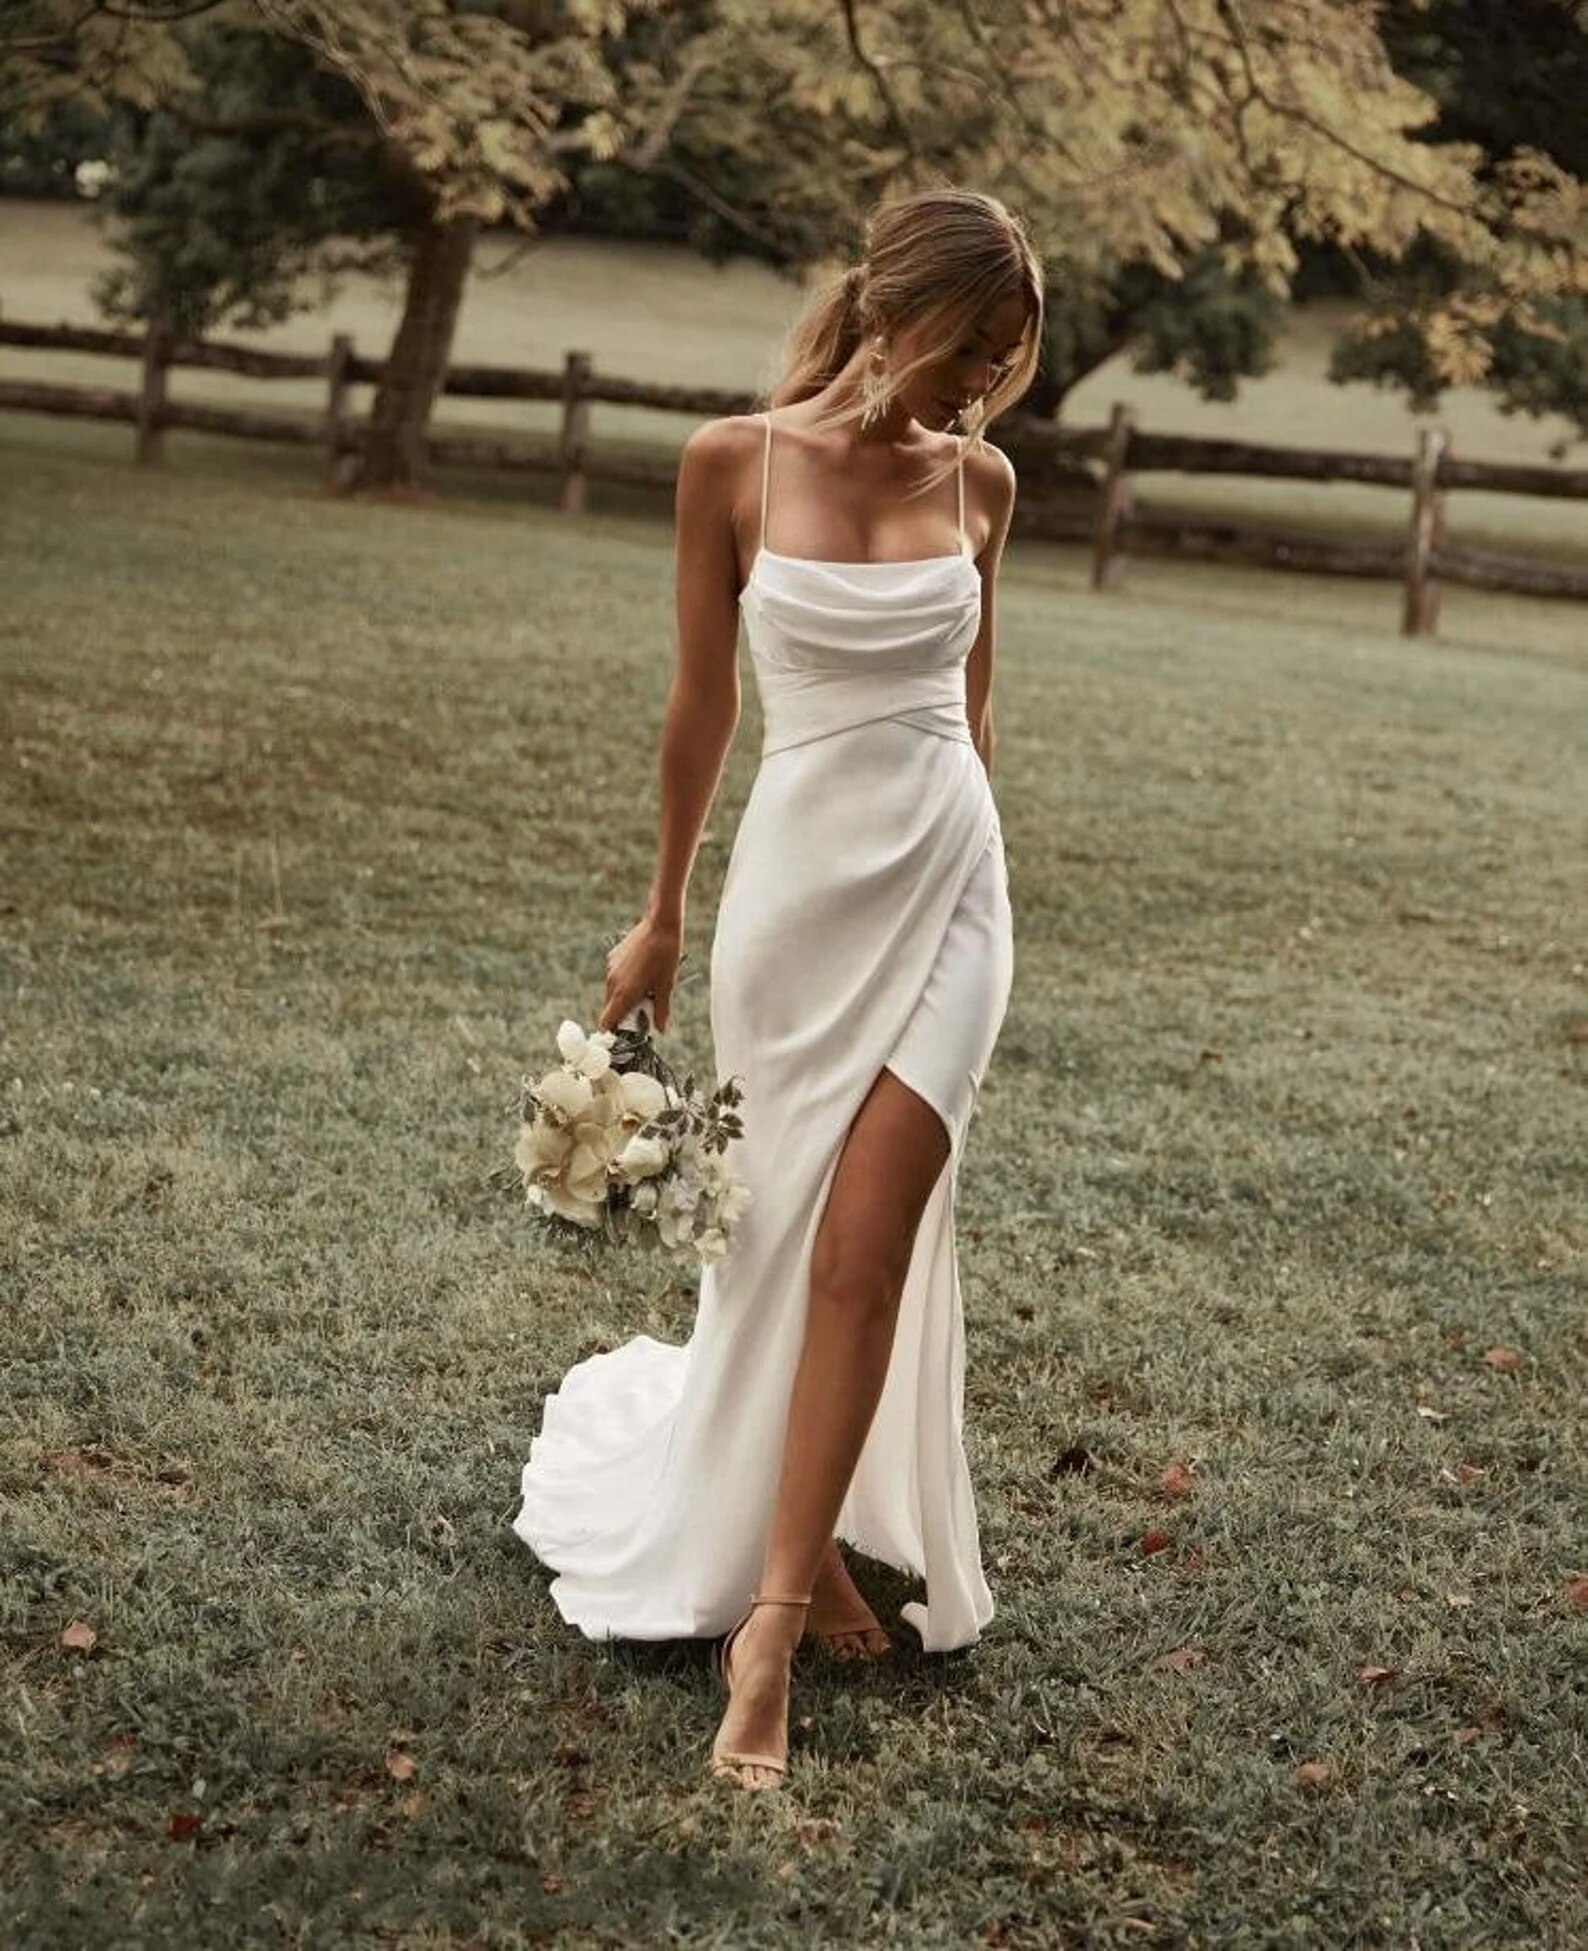 Top 20+ mẫu váy cưới đơn giản, hiện đại cho nàng dâu - Kế Hoạch Cưới